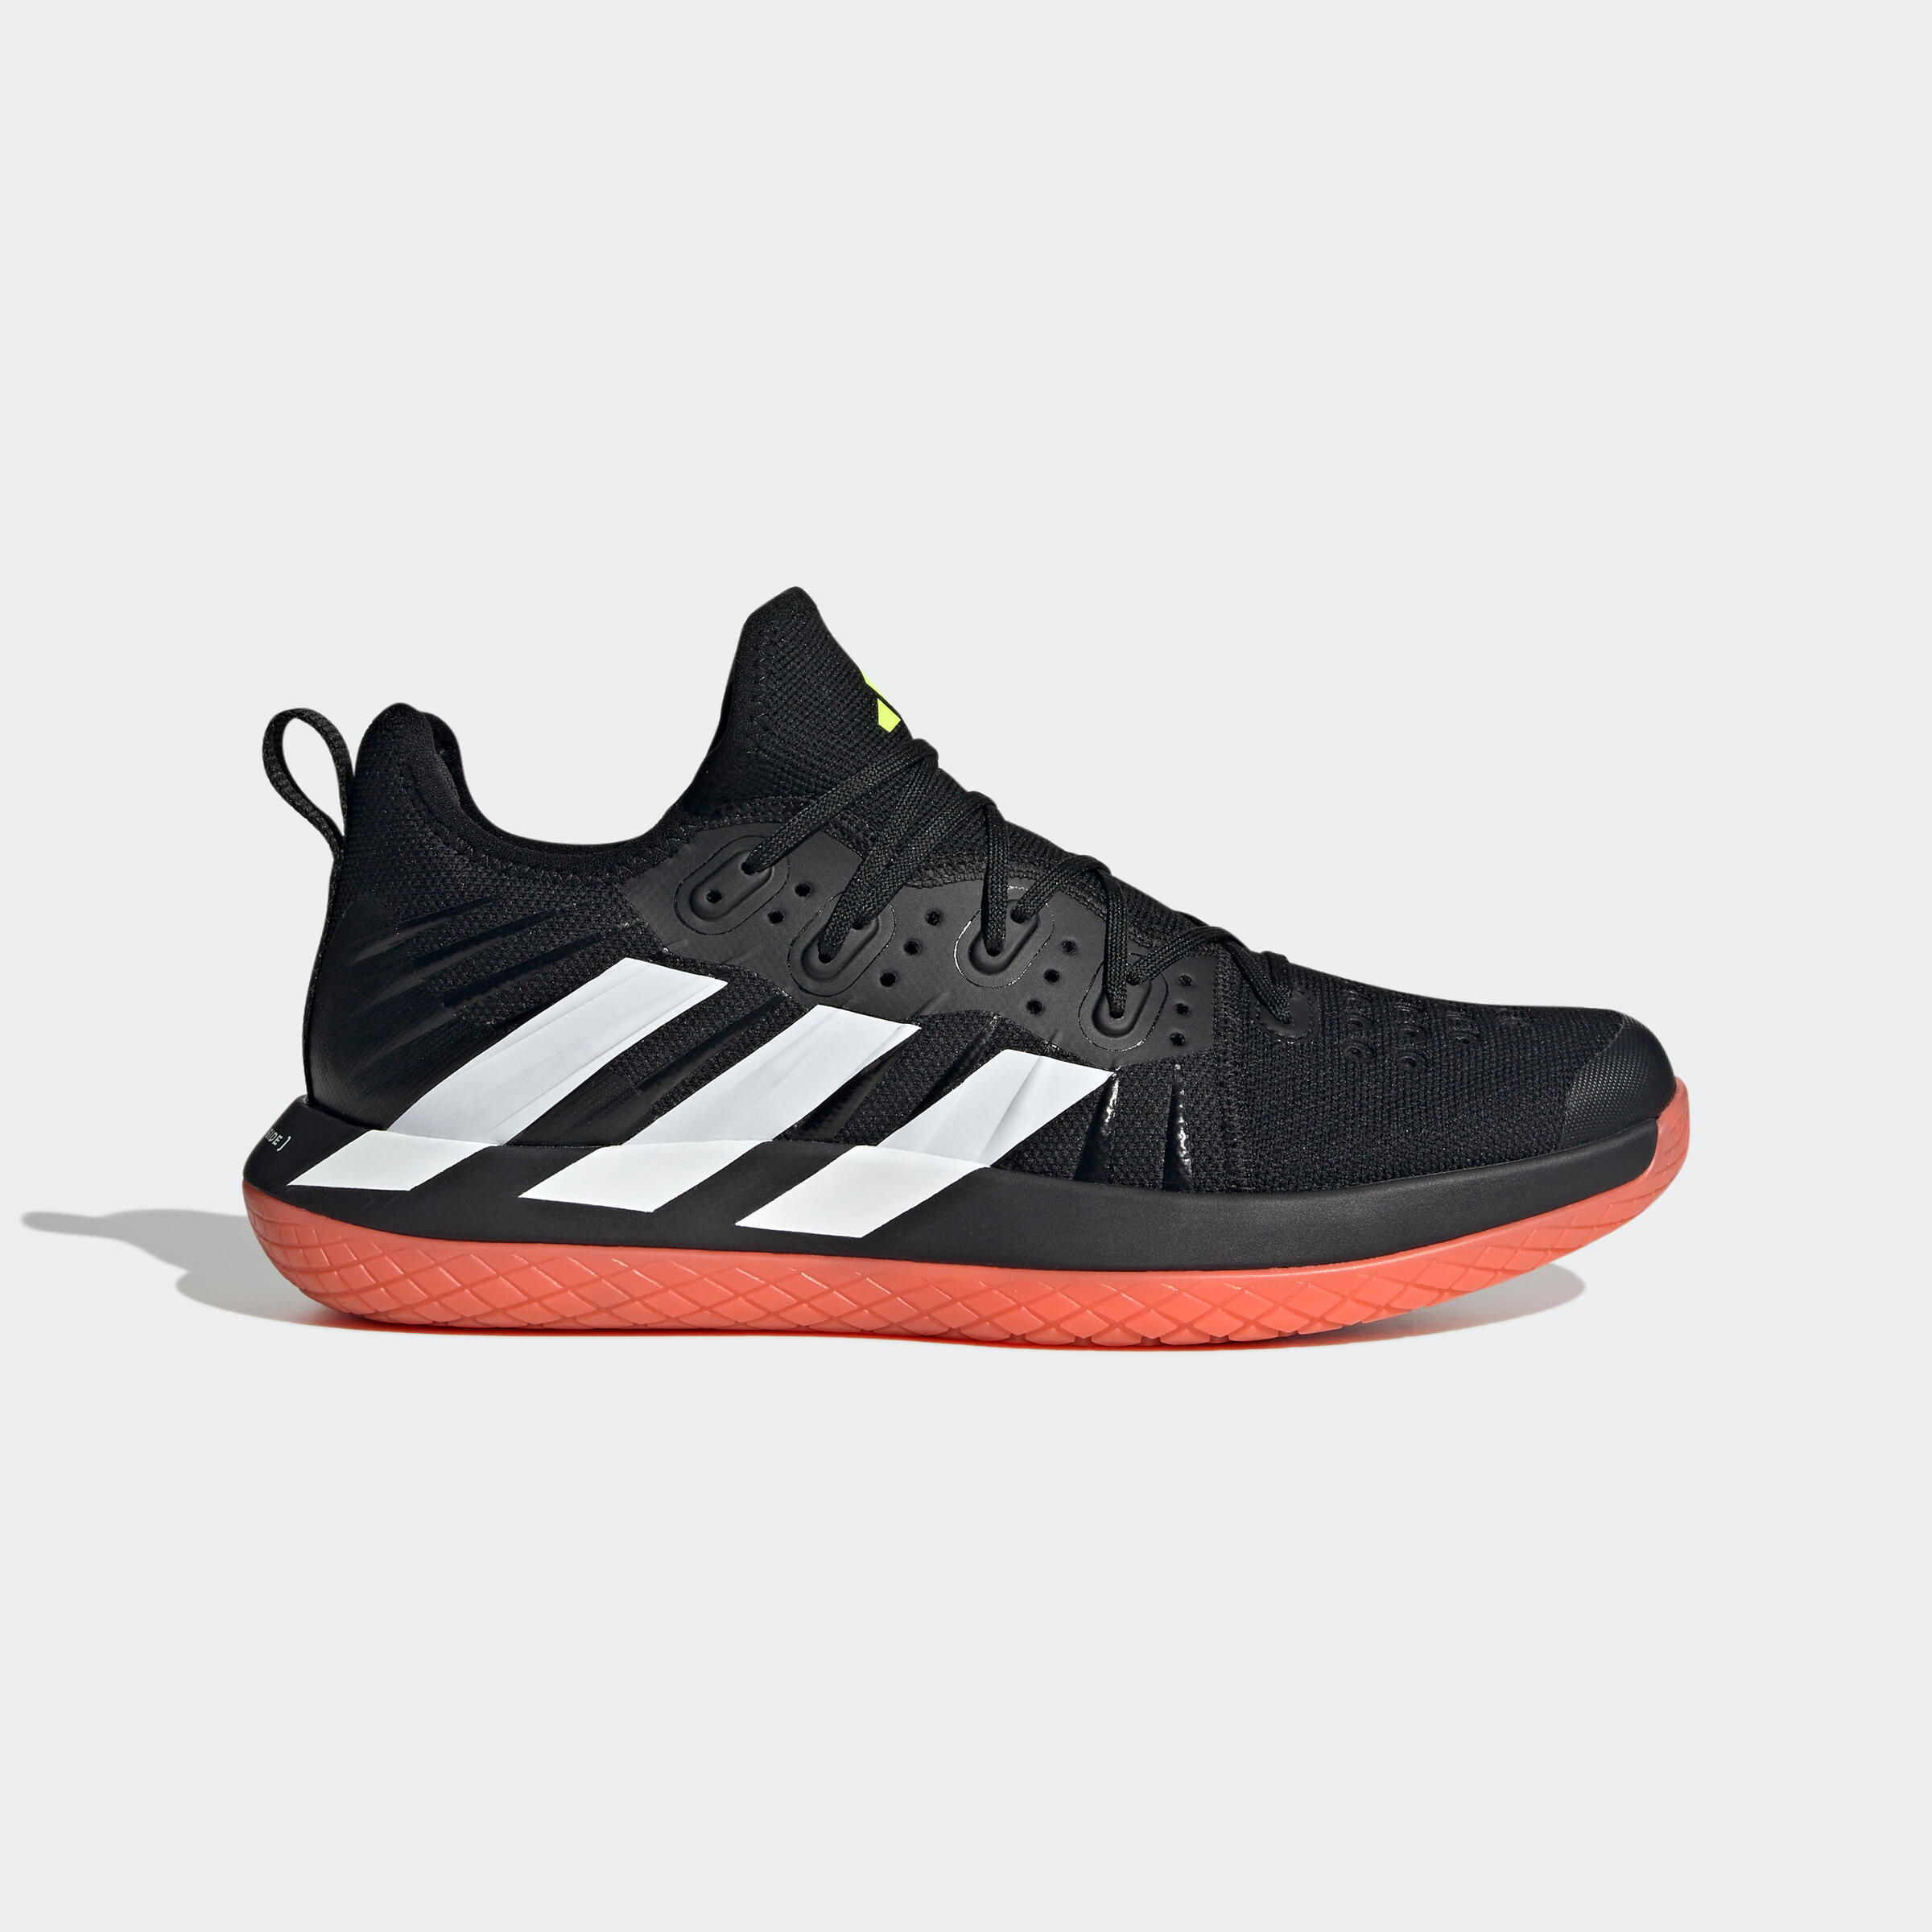 Încălțăminte Adidas Stabil Next Gen Negru-Alb-Roșu Adulți adidas